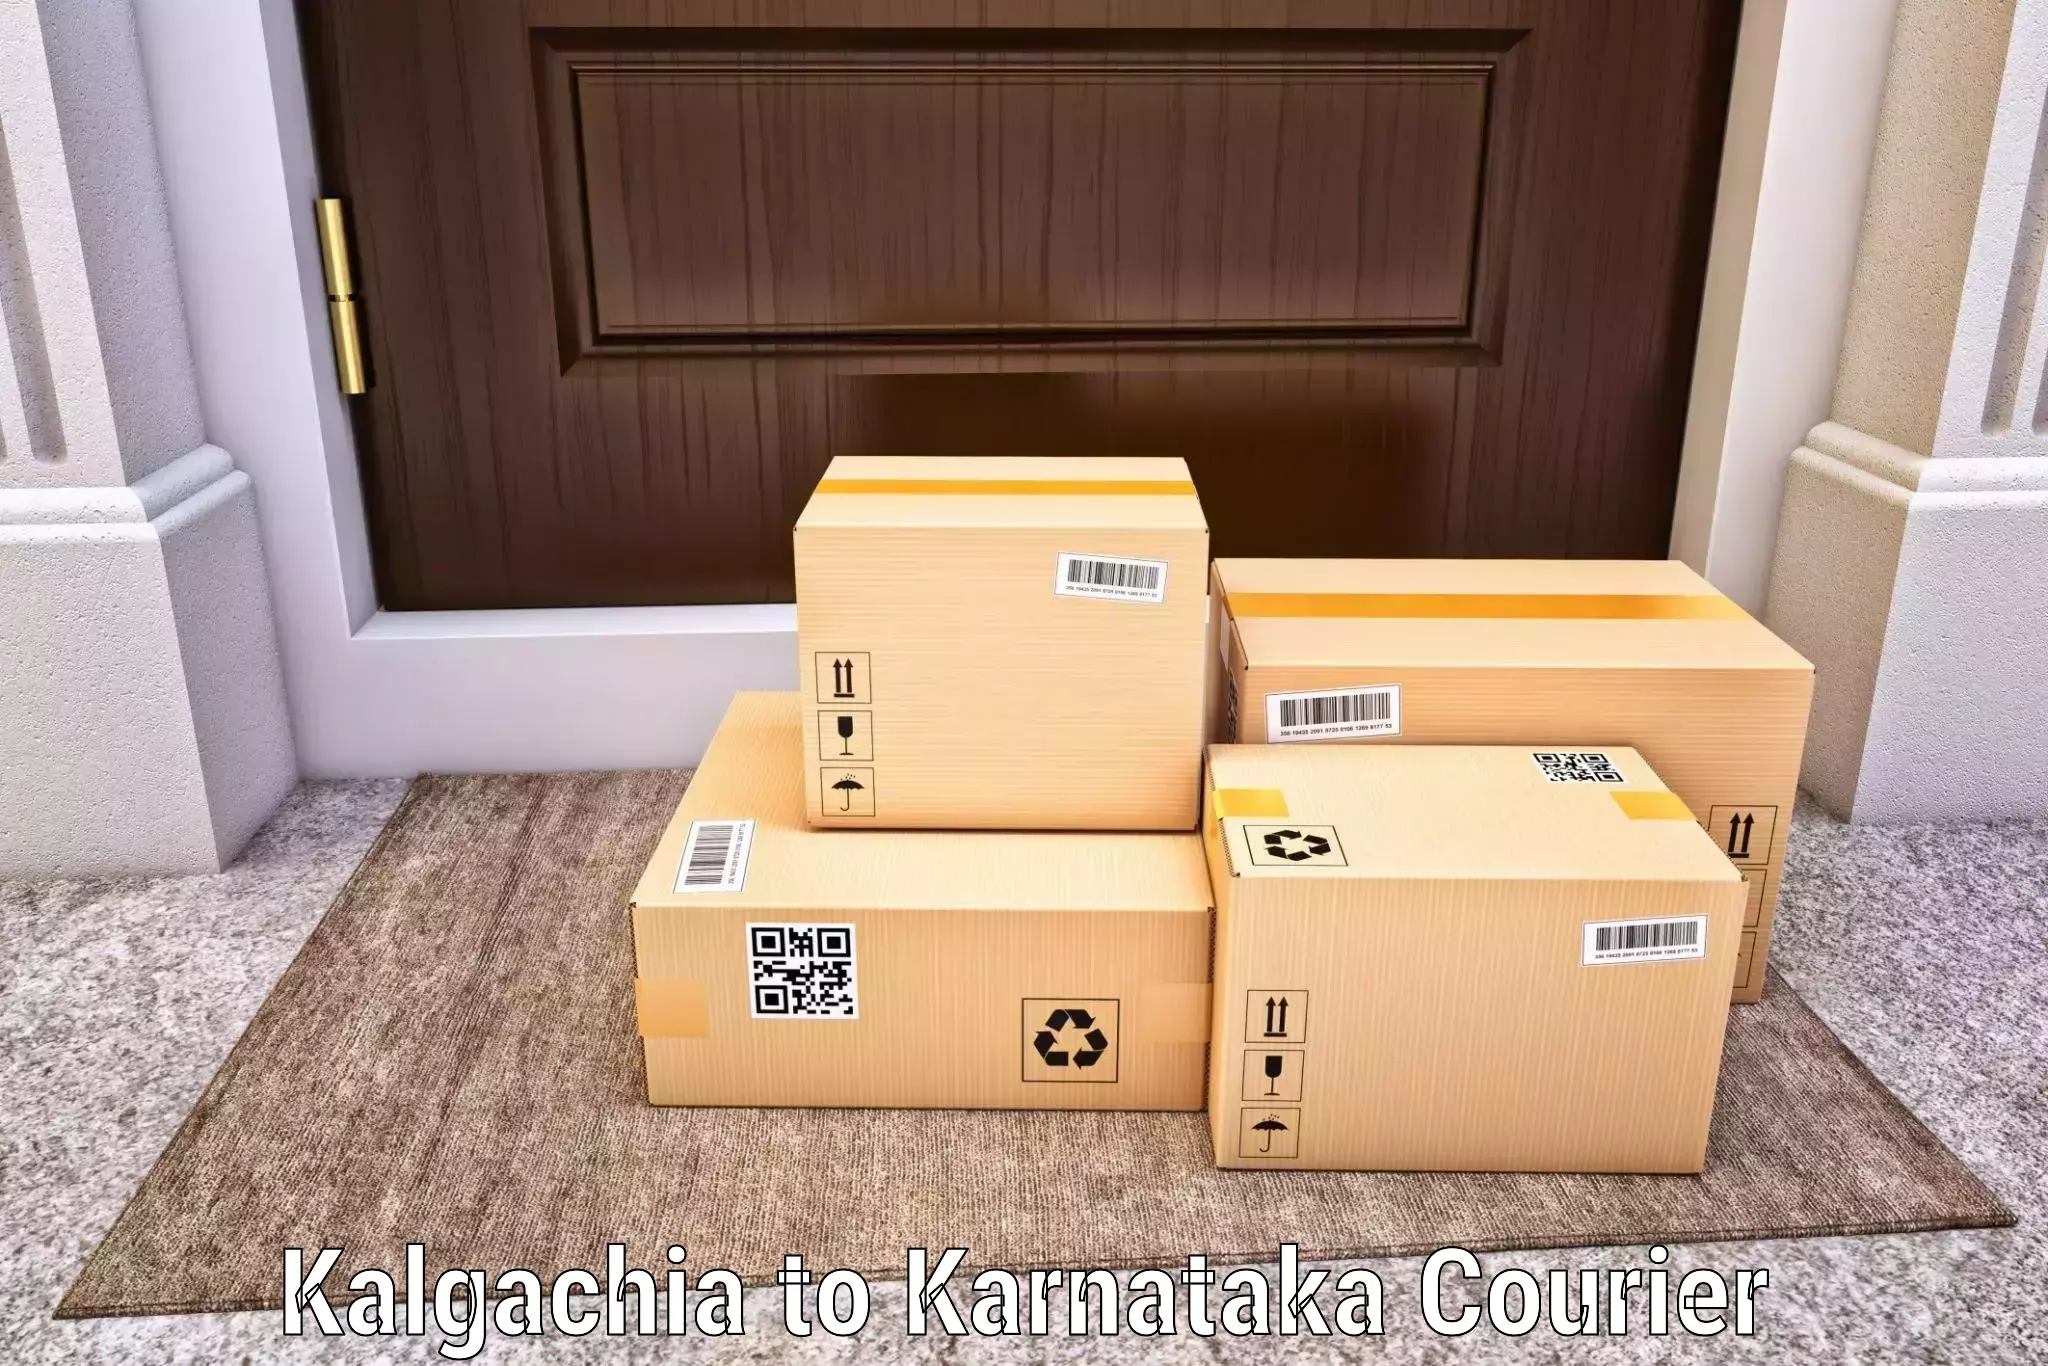 24/7 shipping services in Kalgachia to Afzalpur